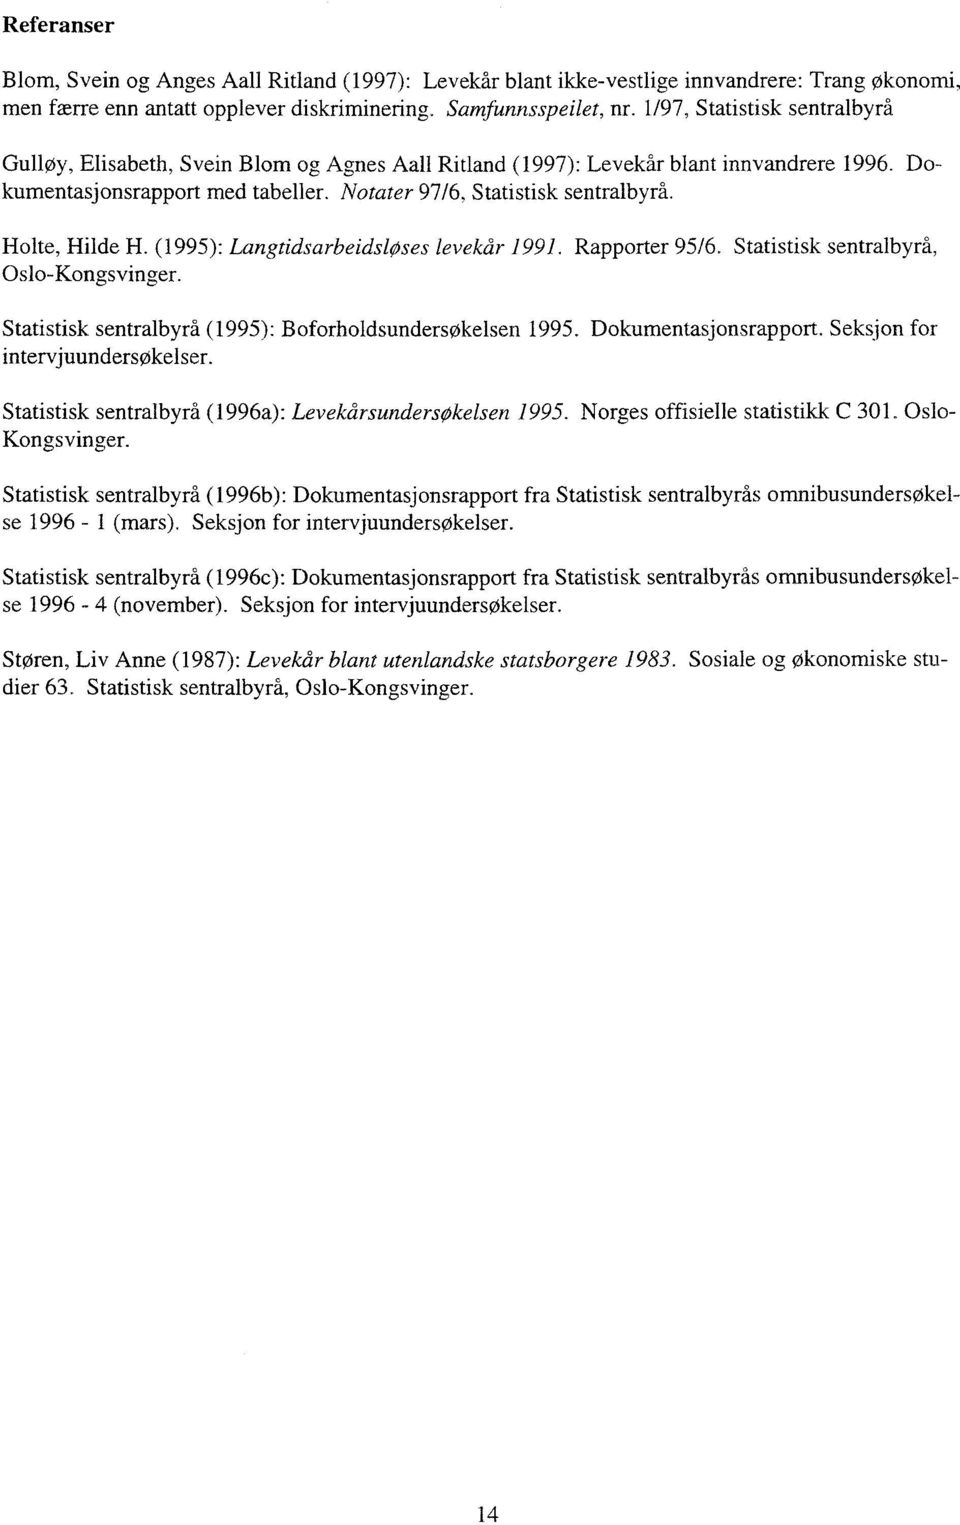 Holte, Hilde H. (995): Langtidsarbeidsløses levekår 99. Rapporter 95/6. Statistisk sentralbyrå, Oslo-Kongsvinger. Statistisk sentralbyrå (995): B oforholdsundersøkelsen 995. Dokumentasjonsrapport.